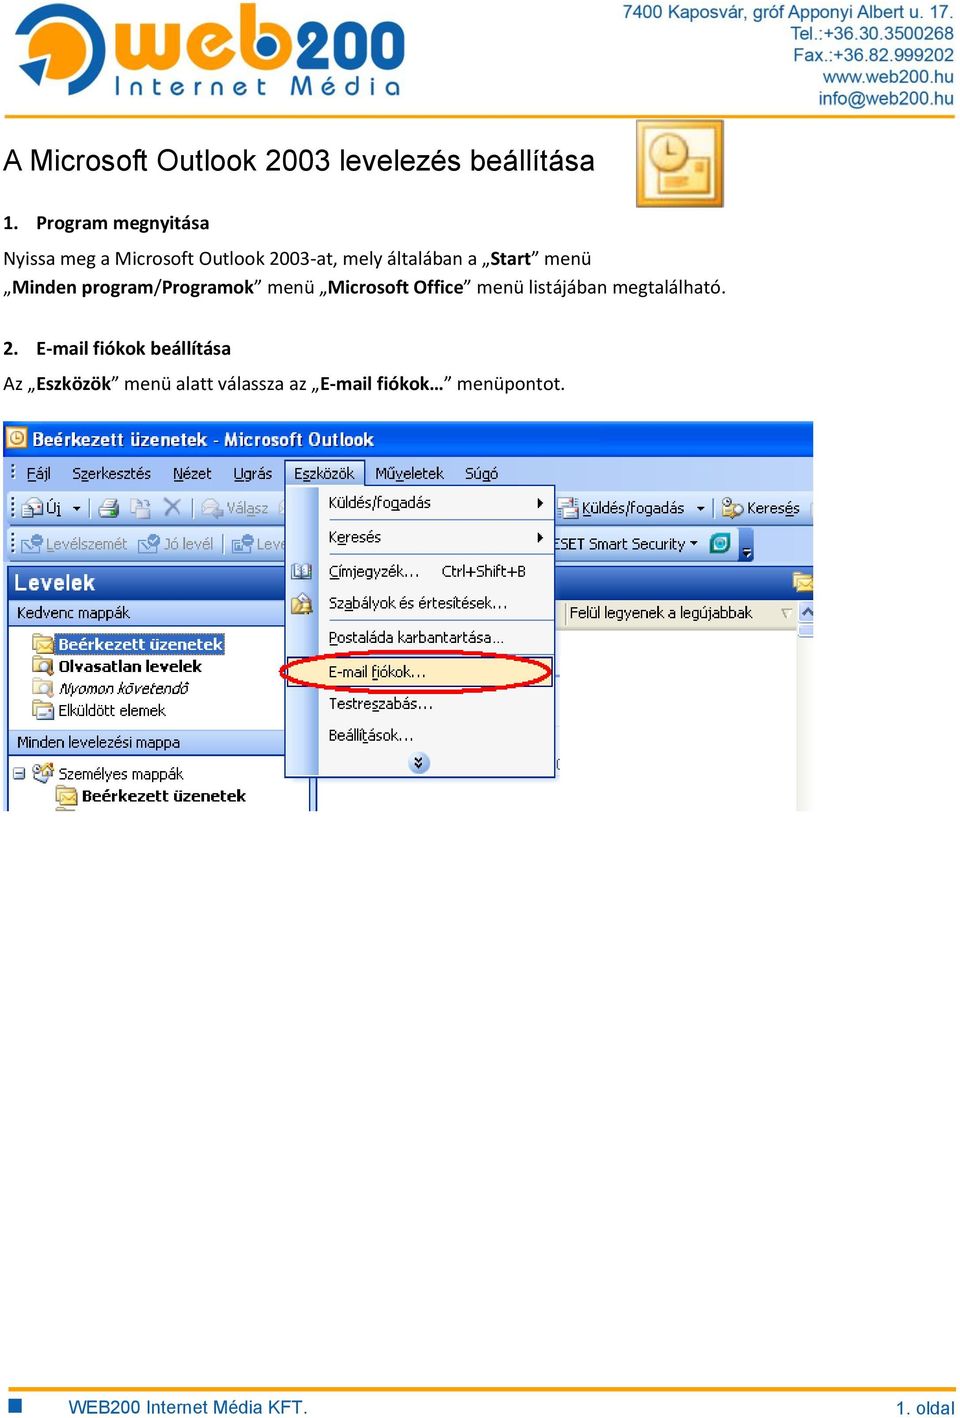 A Microsoft Outlook 2003 levelezés beállítása - PDF Ingyenes letöltés